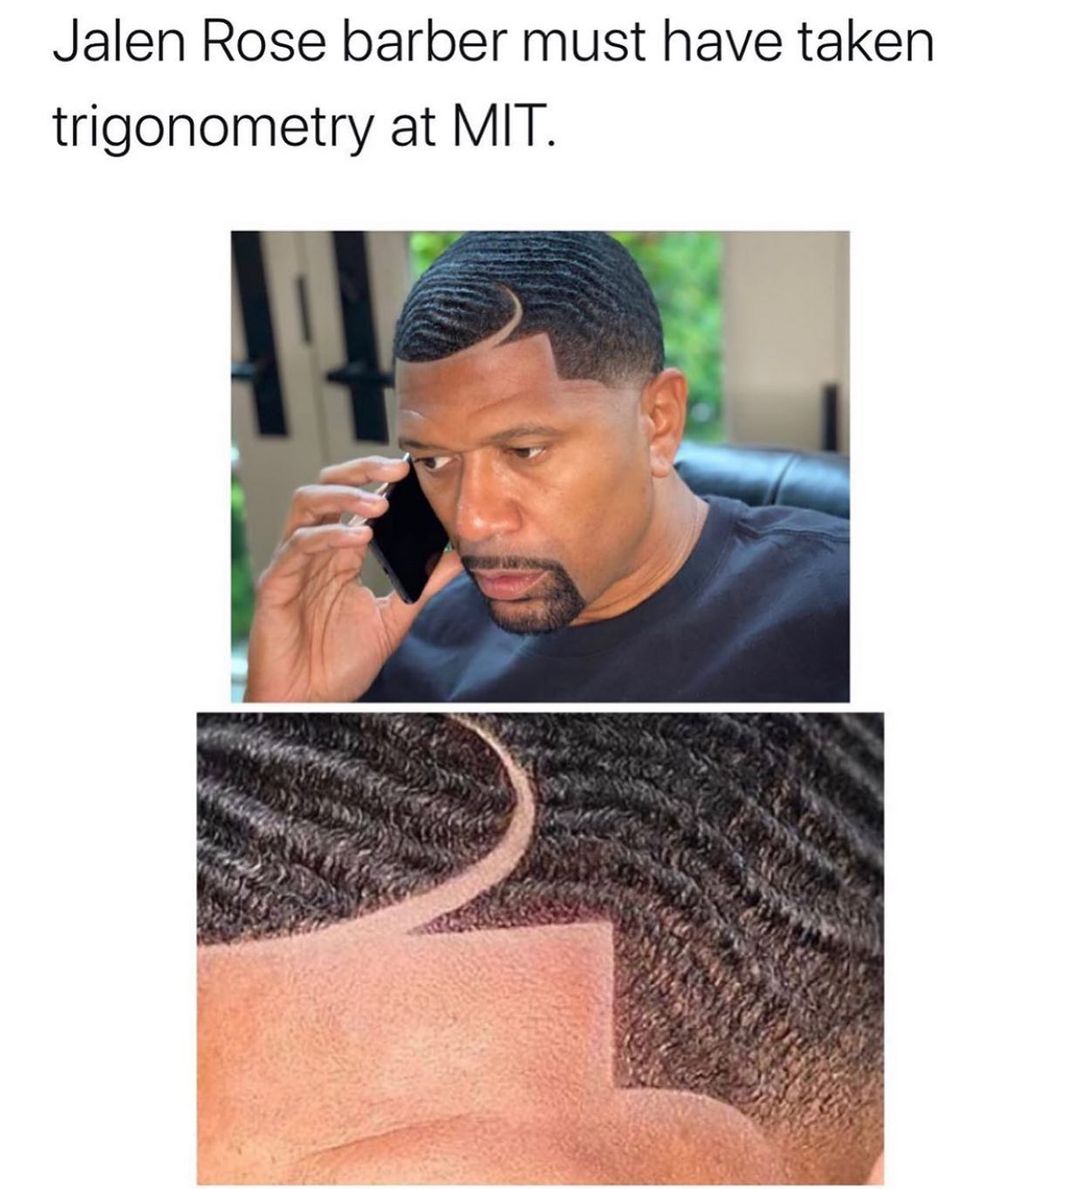 Jalen Rose barber must have taken trigonometry at MIT.